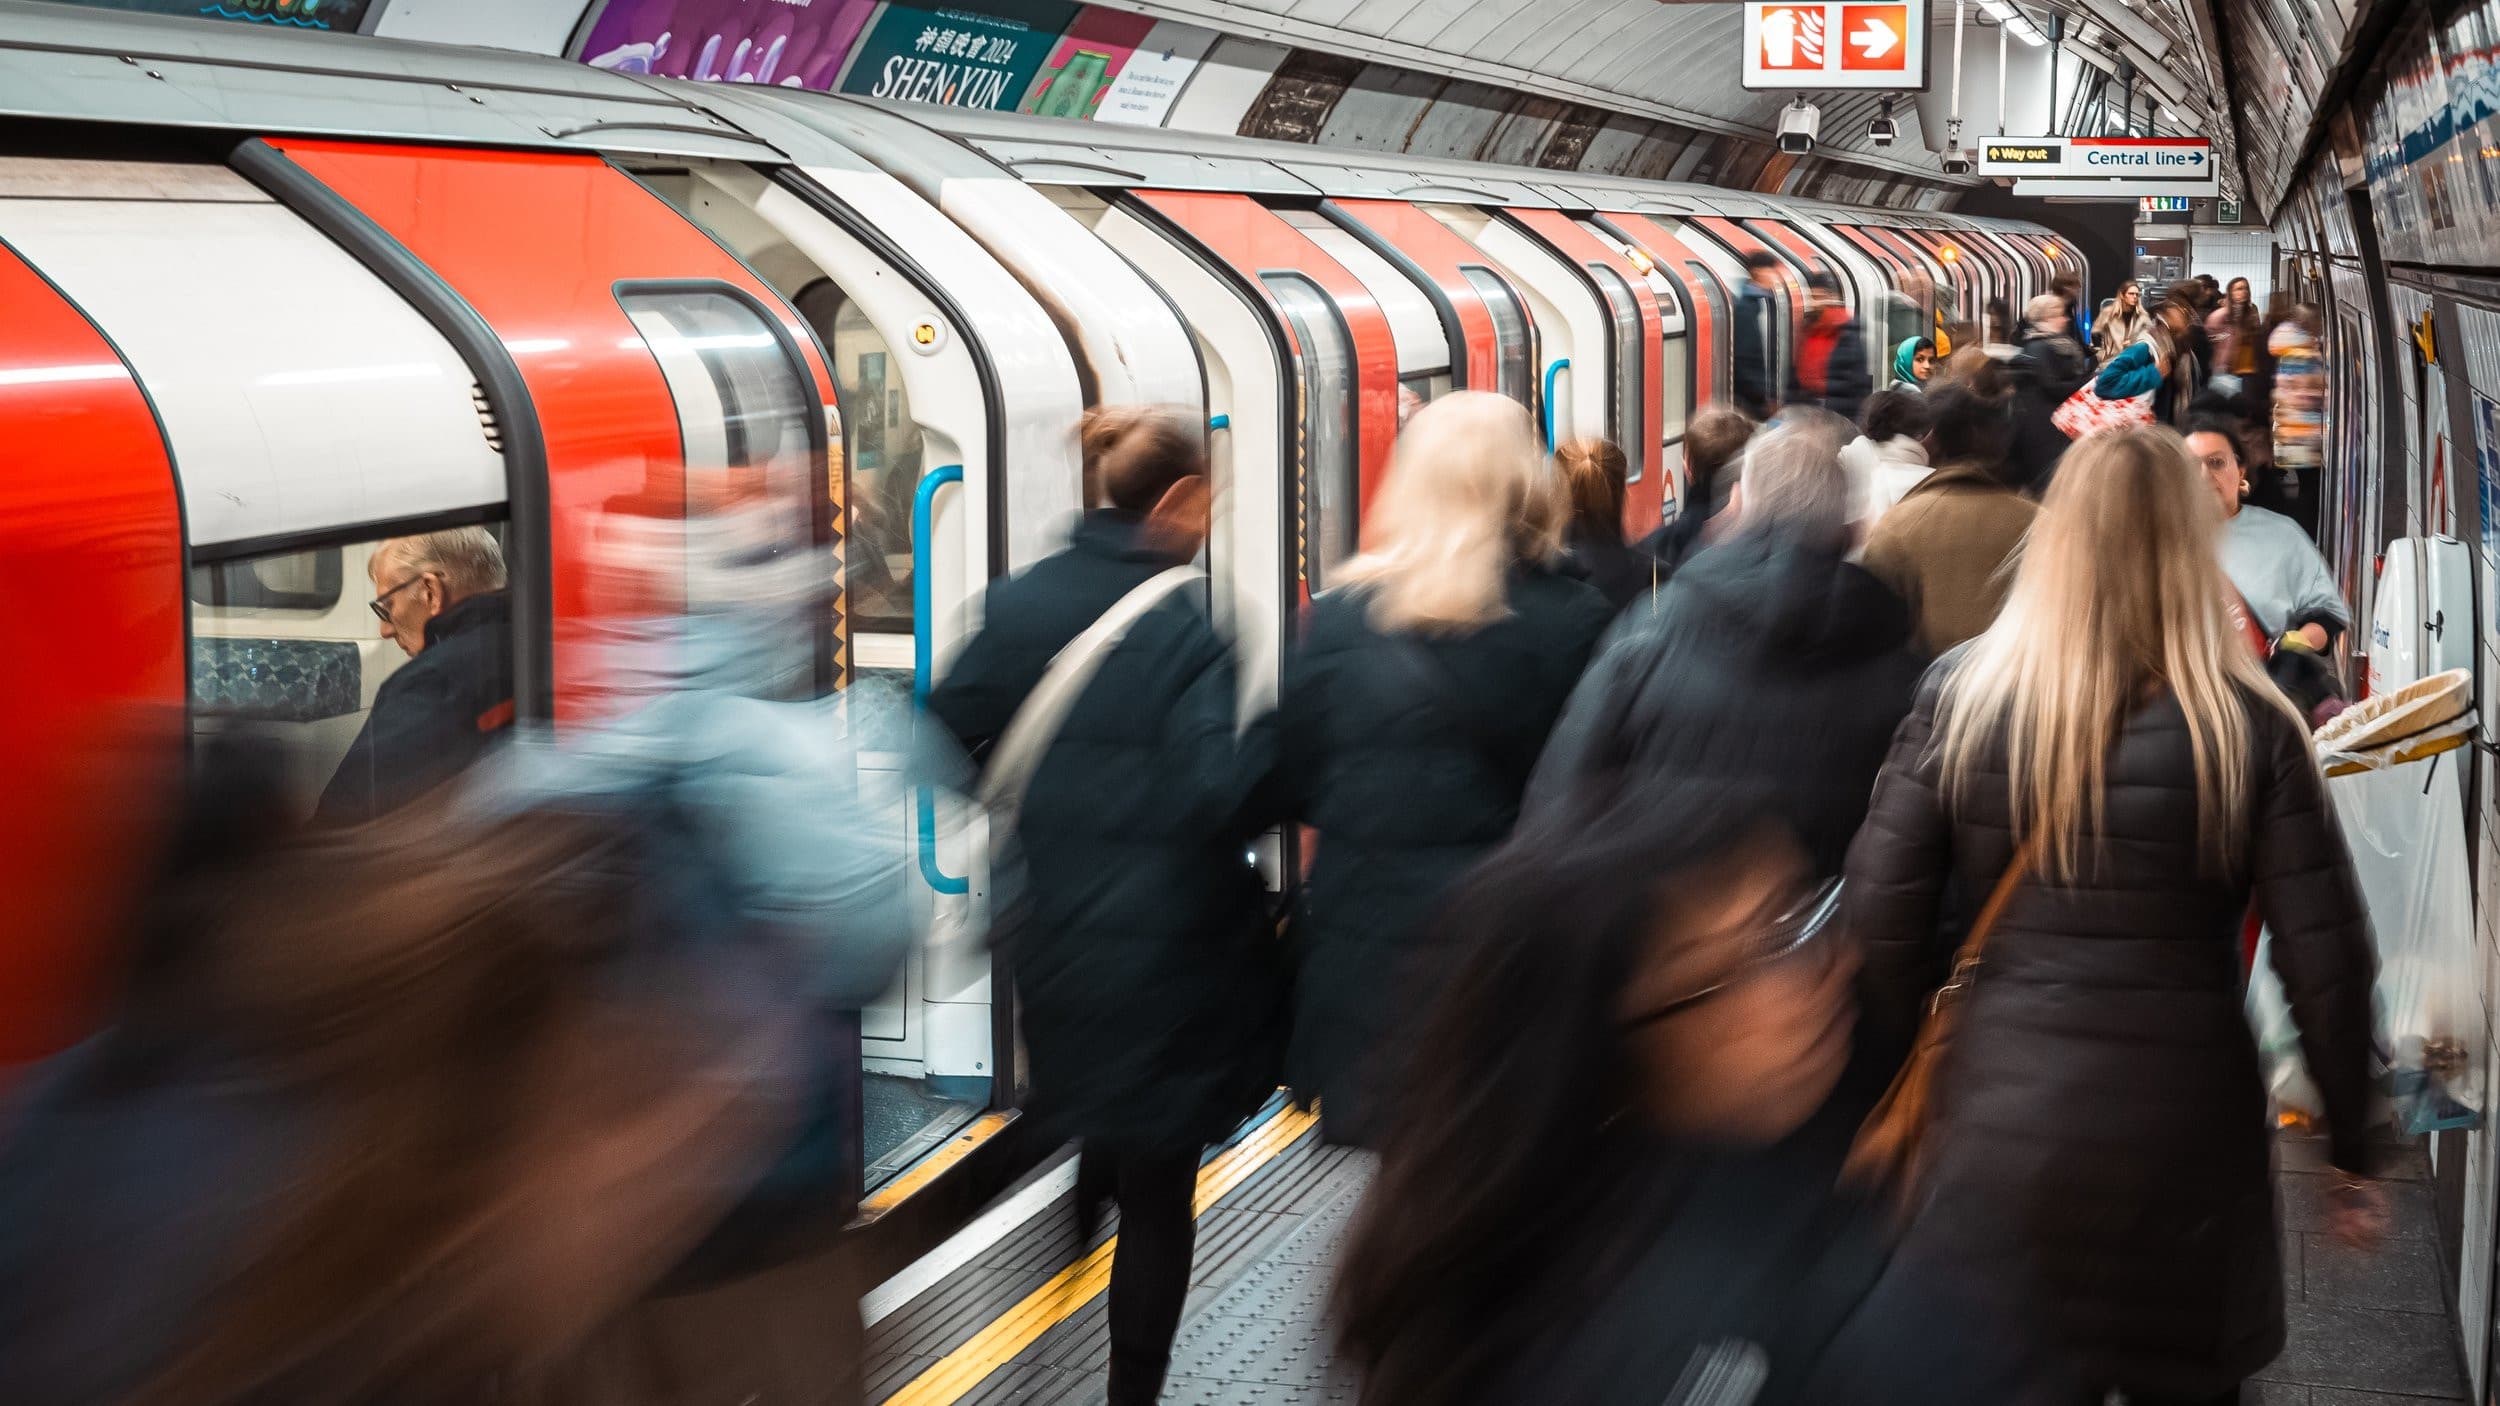 The Tube: Keep London Moving! - Season 1 Episode 2